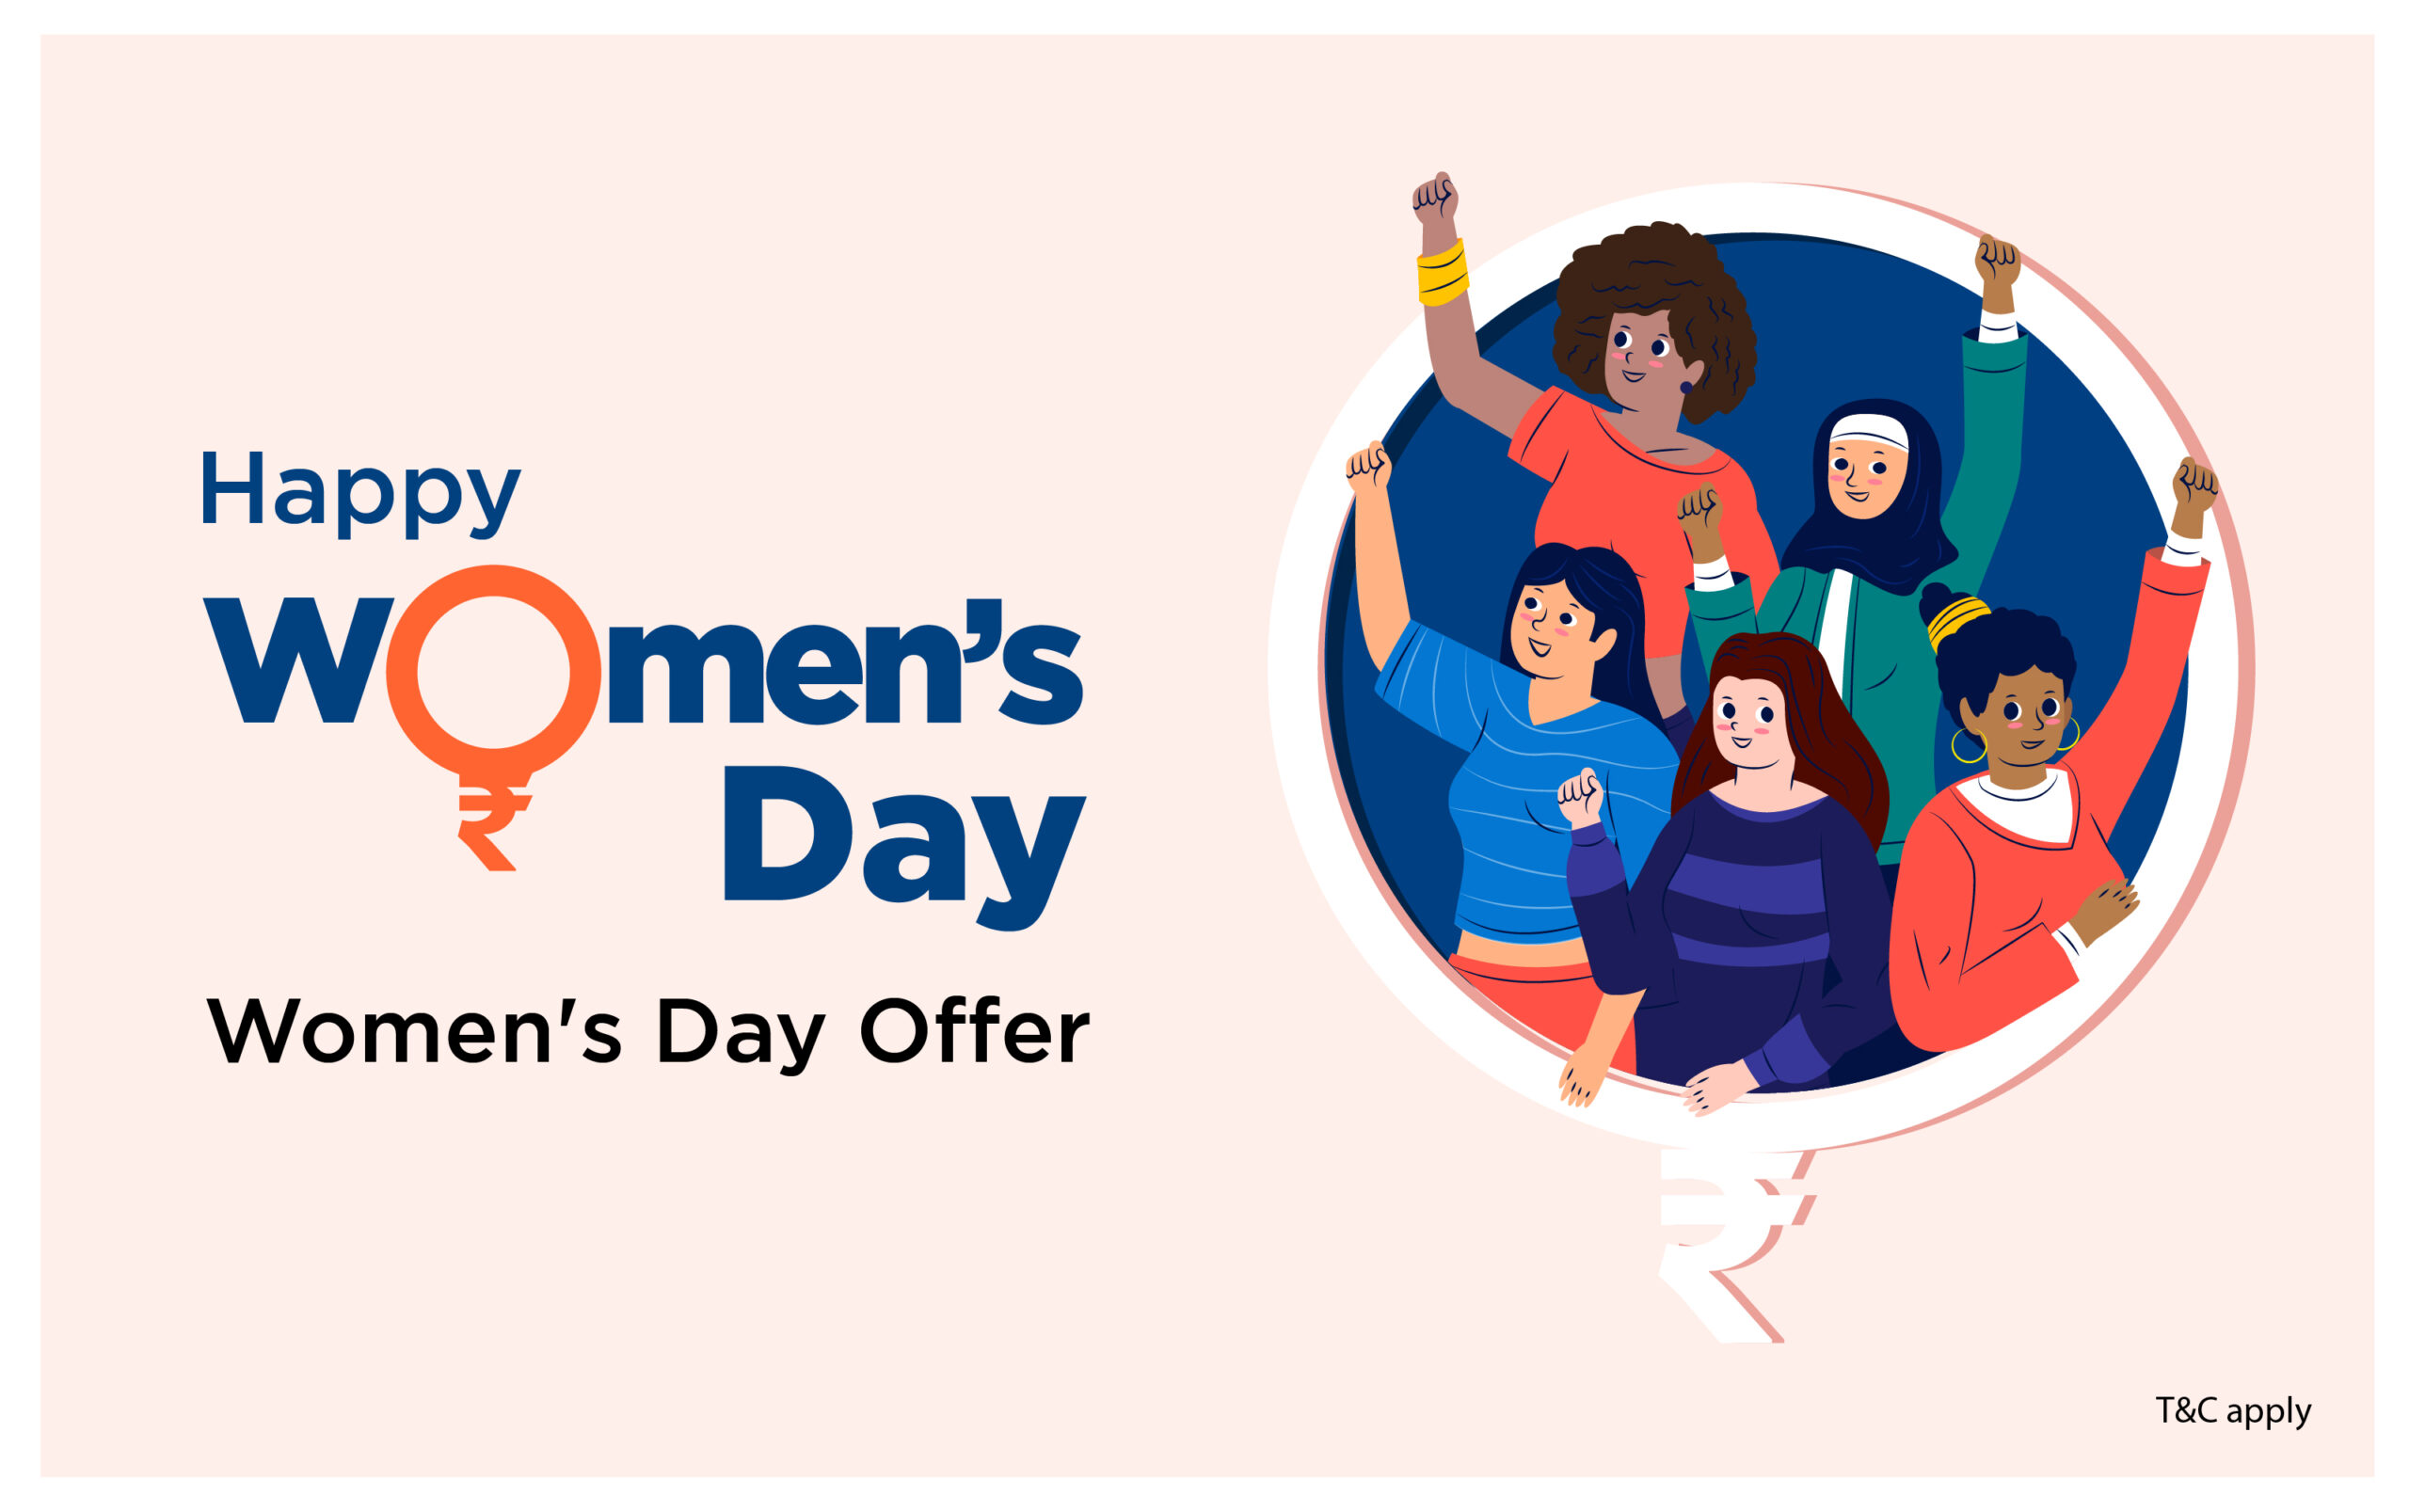 Women's Day Offer